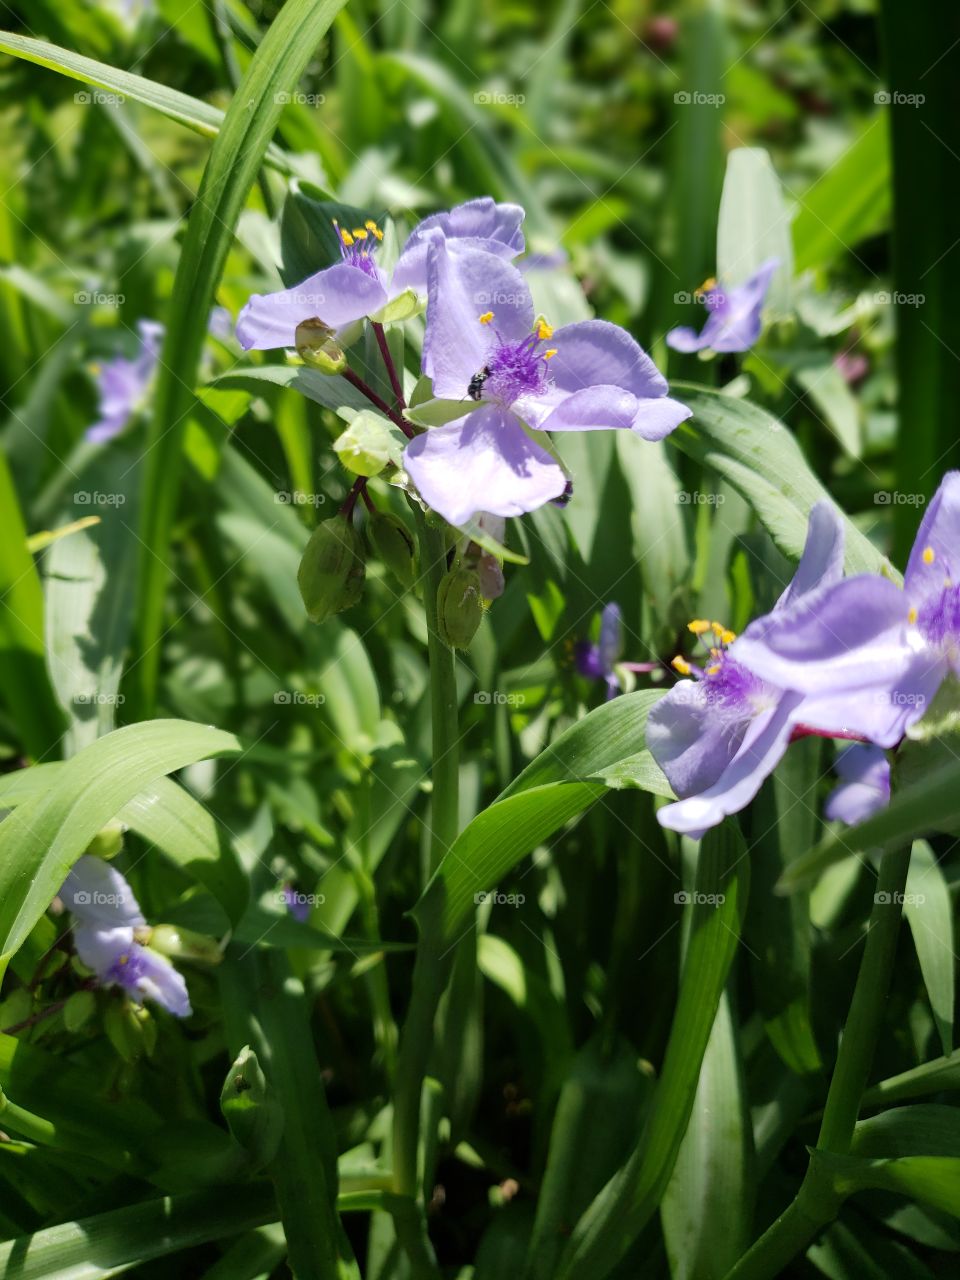 Purple blooms hidden in tall grass